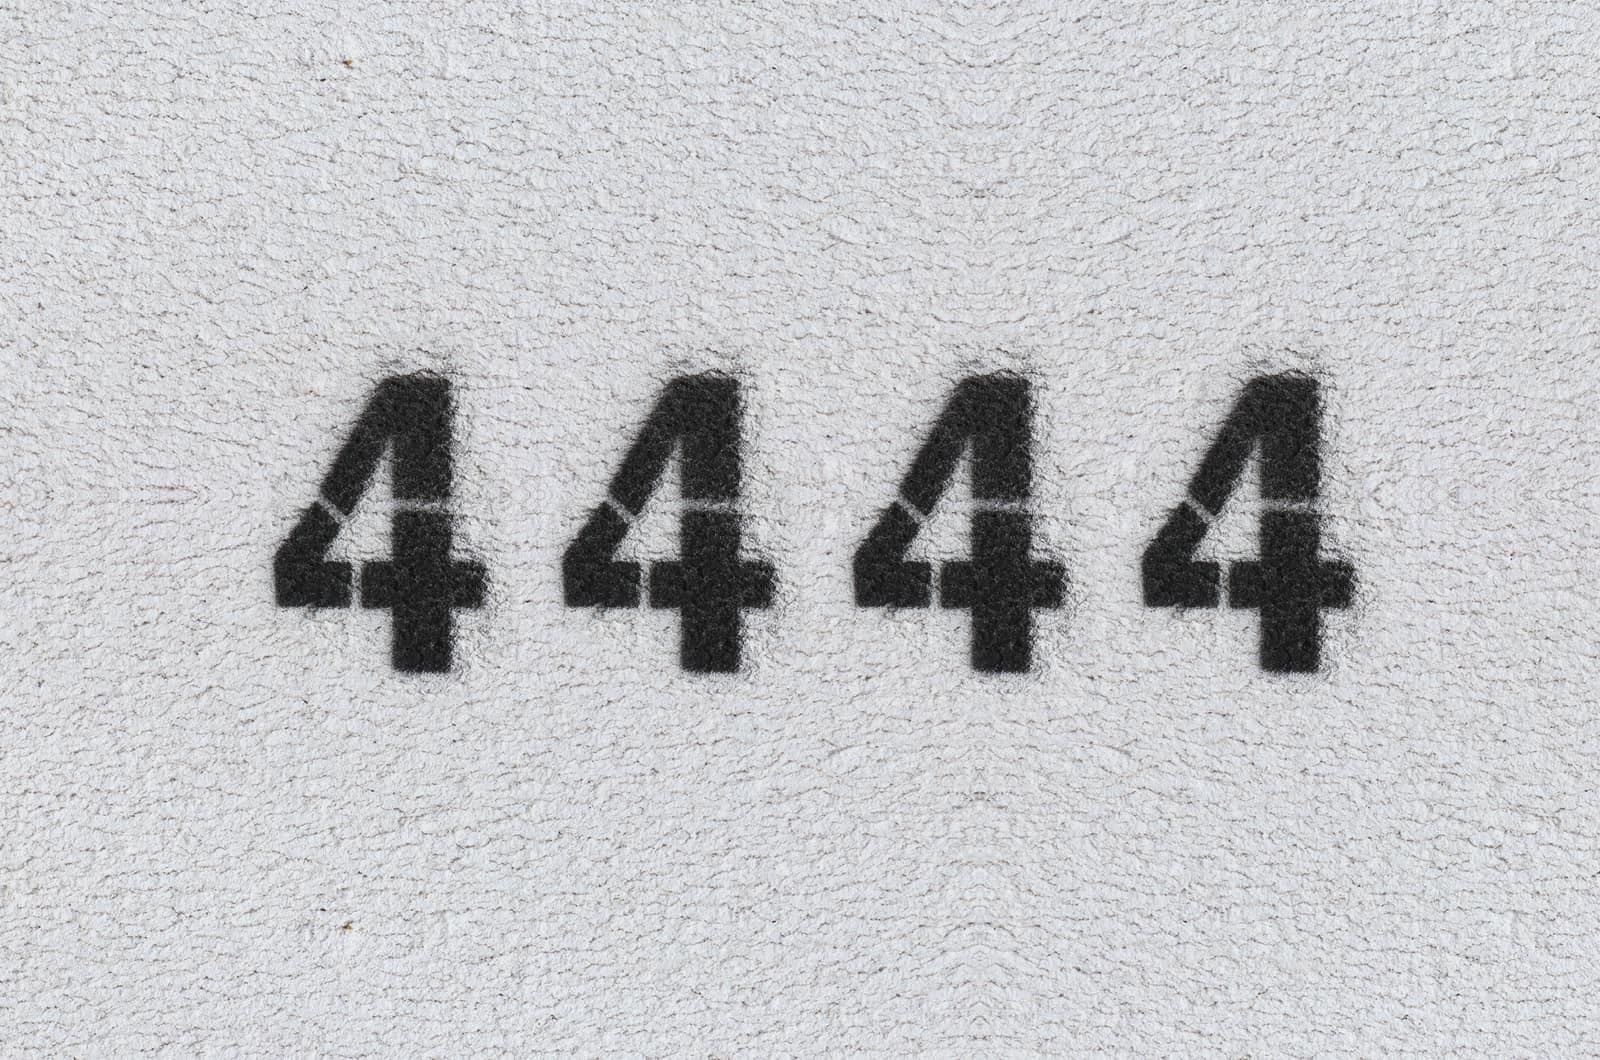 4444 Bedeutung – was verbirgt diese komische Zahl?